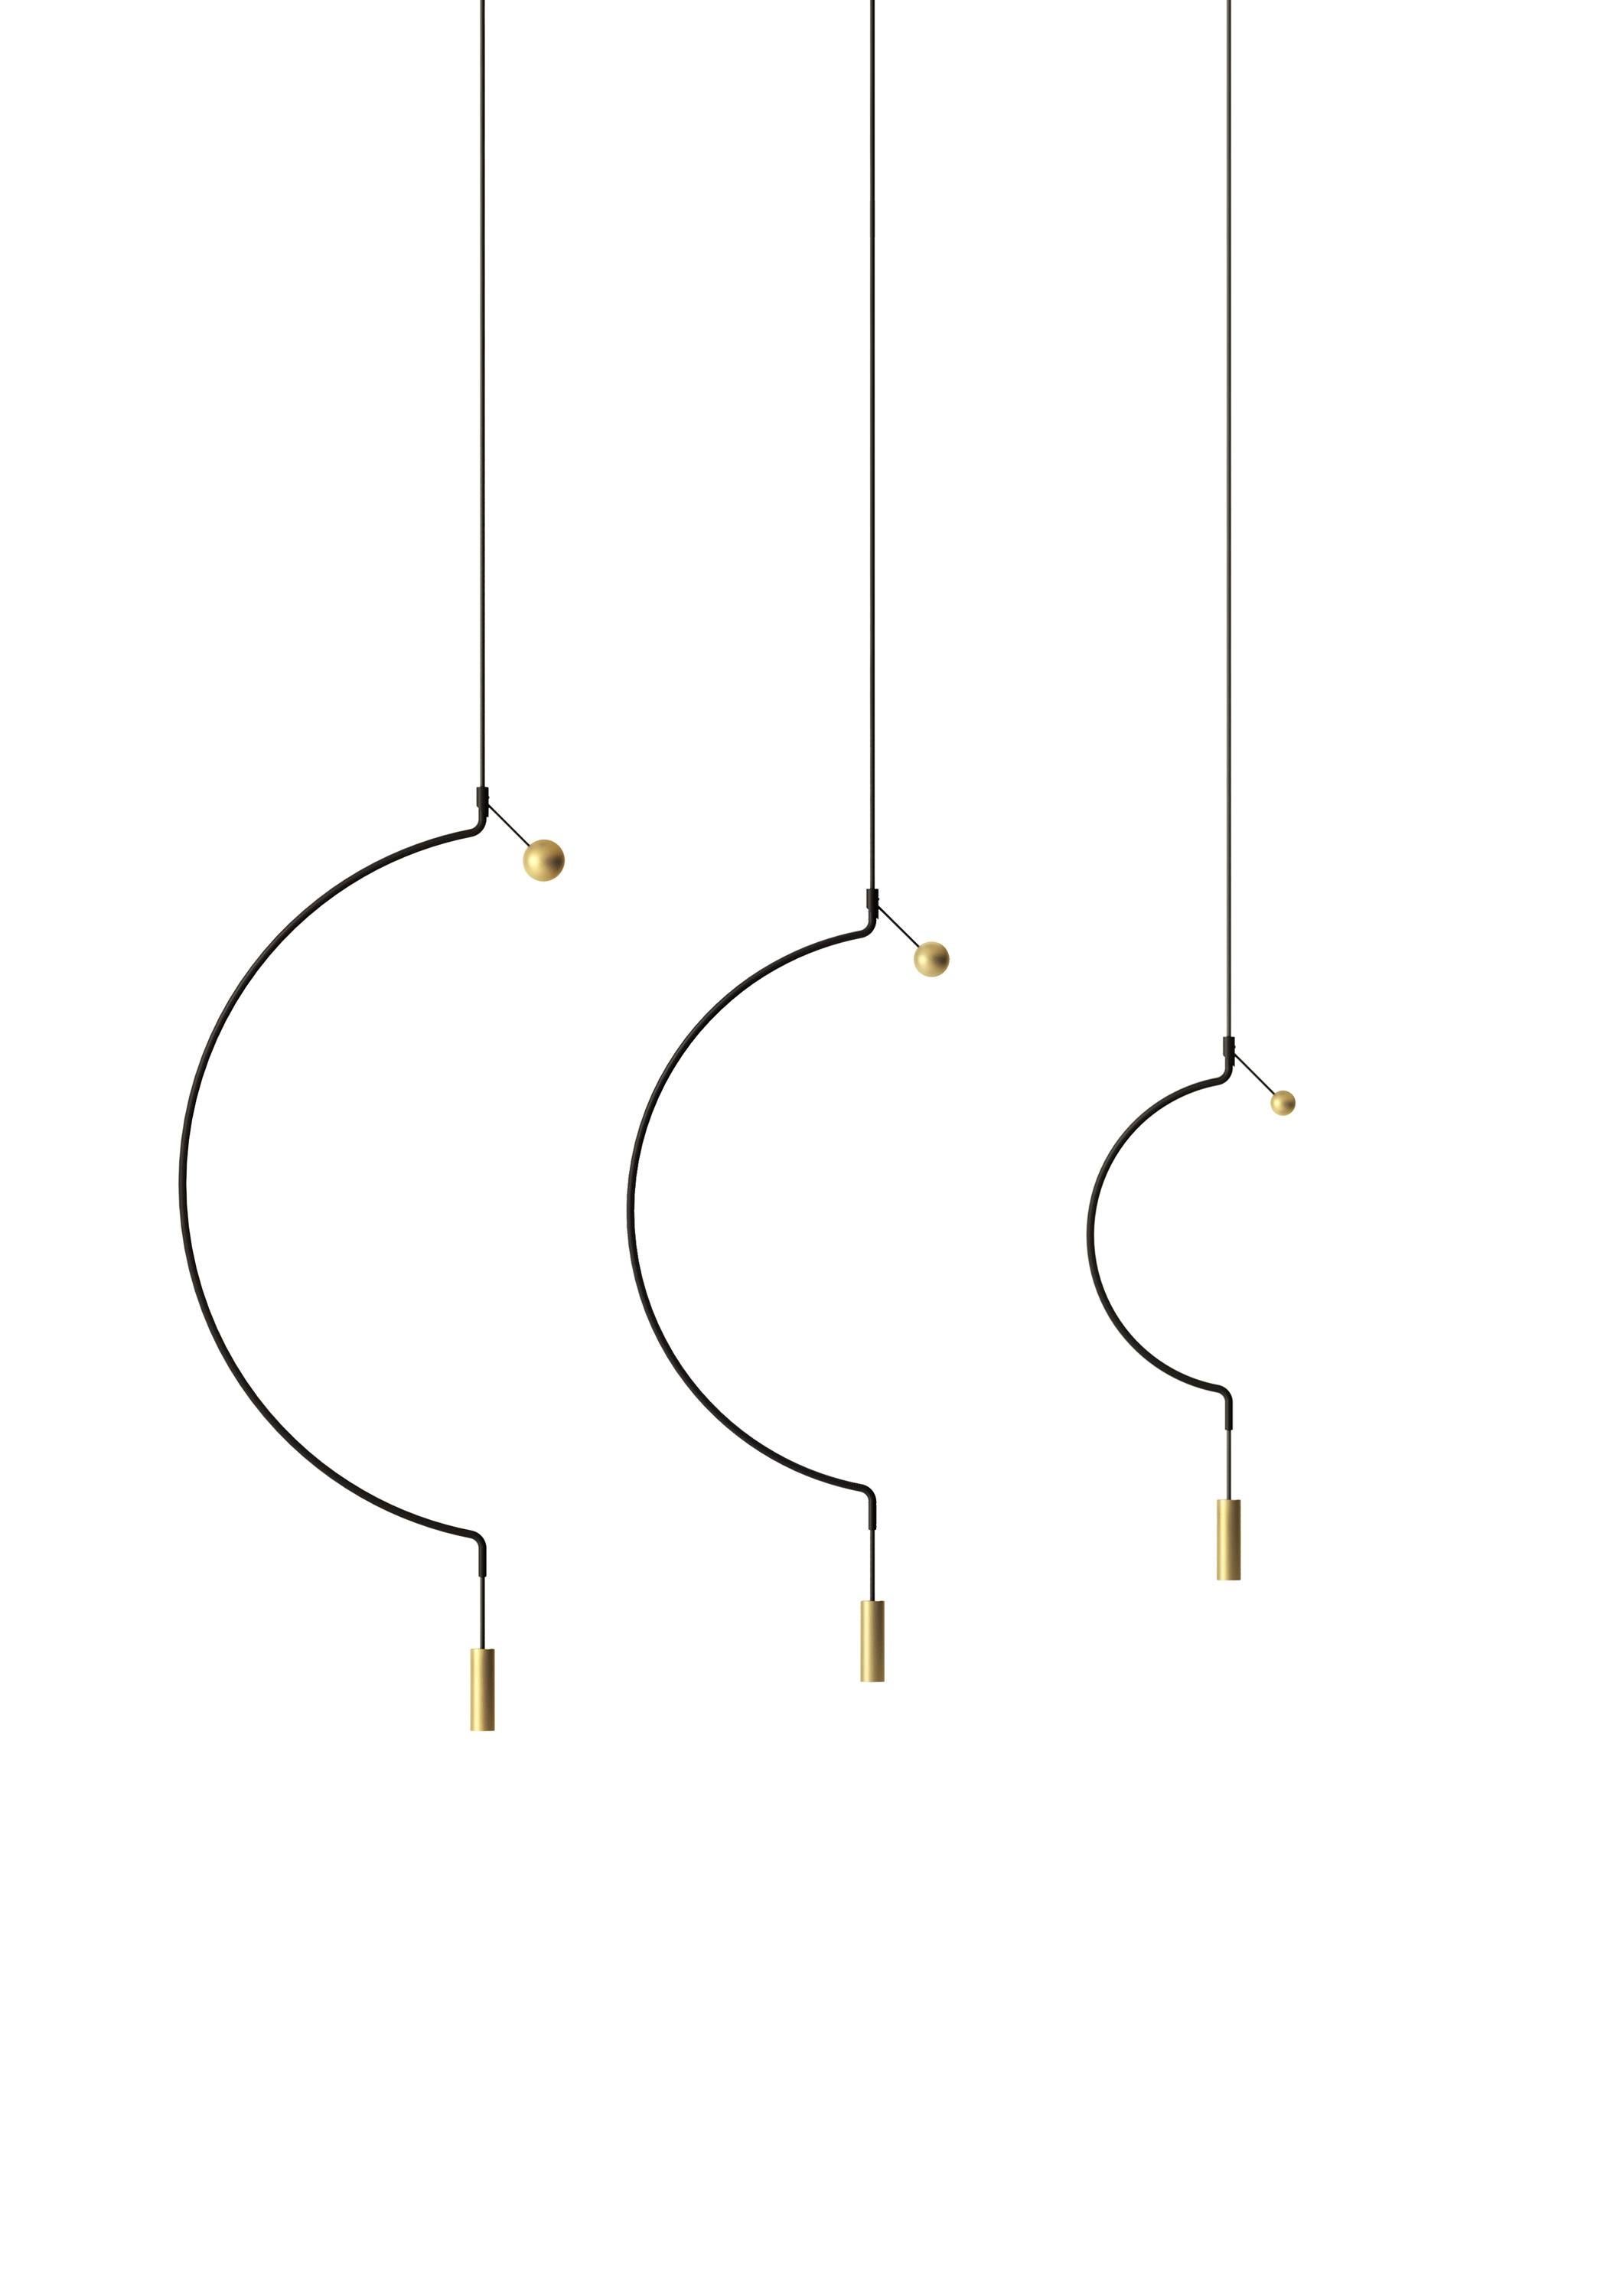 Axolight Lampe à suspension Liaison Model M1 en noir/doré par Sara Moroni

Légèreté et élégance modulaires. Liaison raconte l'équilibre parfait de trois archétypes géométriques : la sphère, le cercle et le cylindre composent un système qui inclut le